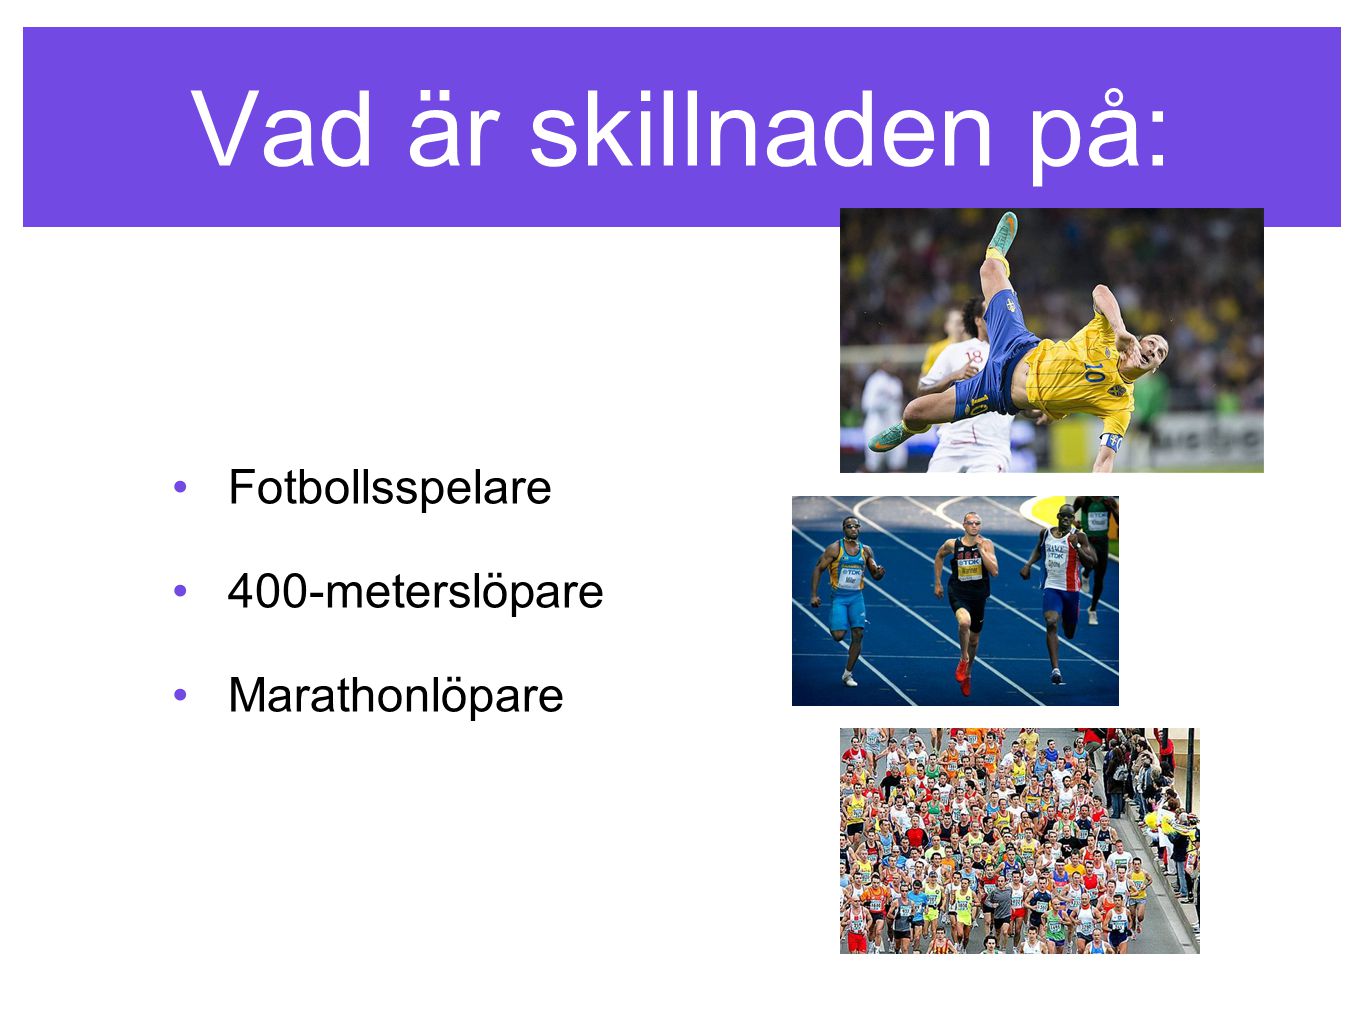 Vad är skillnaden på: Fotbollsspelare 400-meterslöpare Marathonlöpare